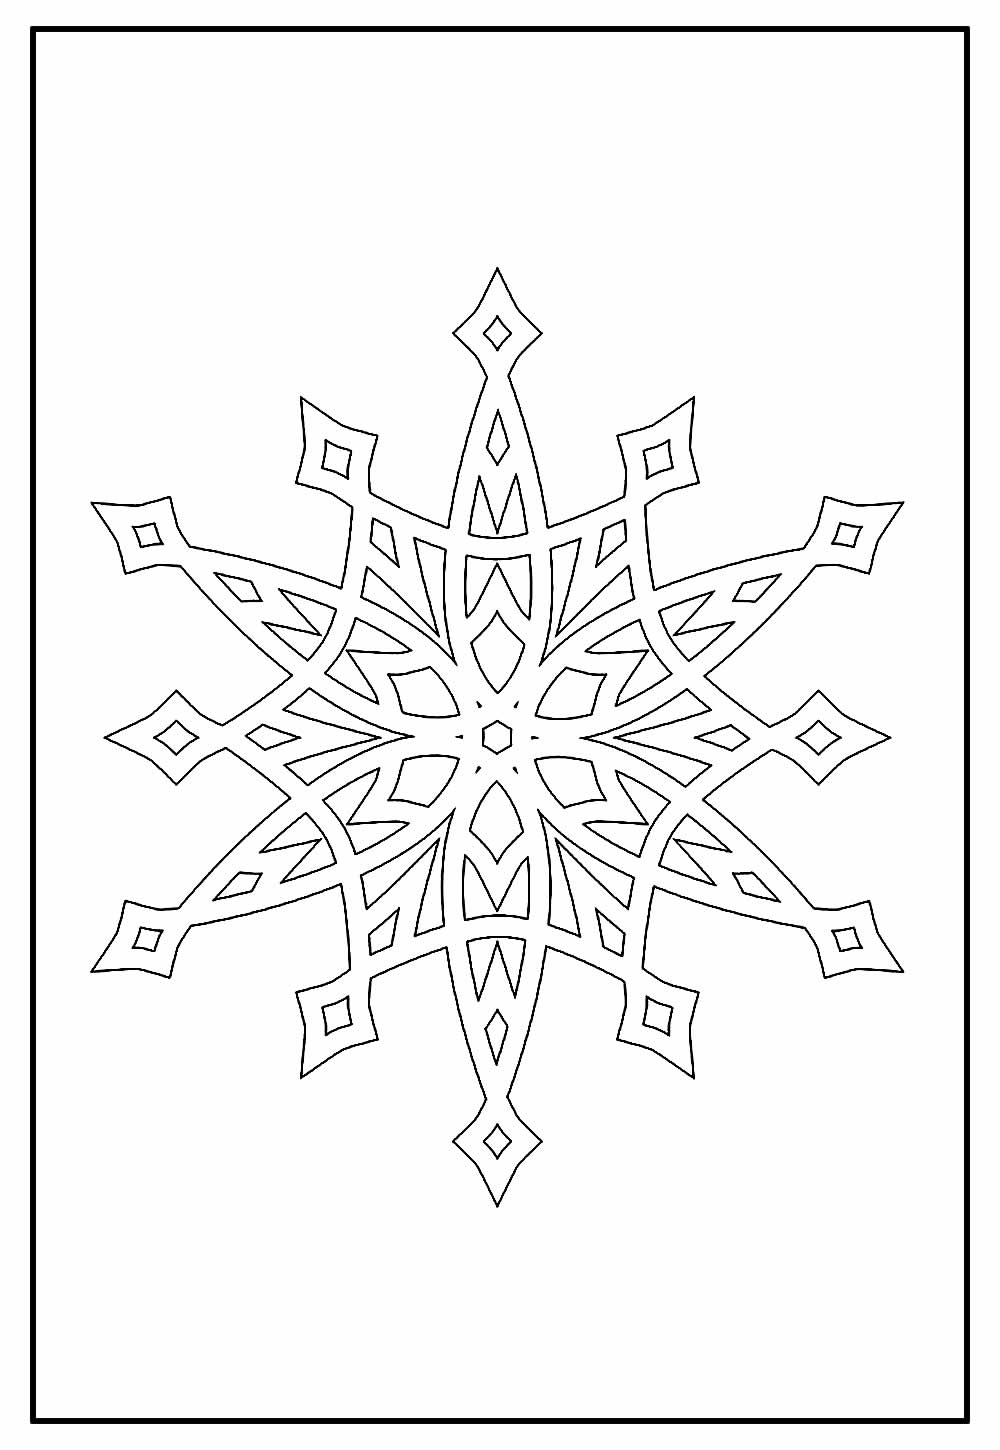 Floco de Neve para colorir - Desenho